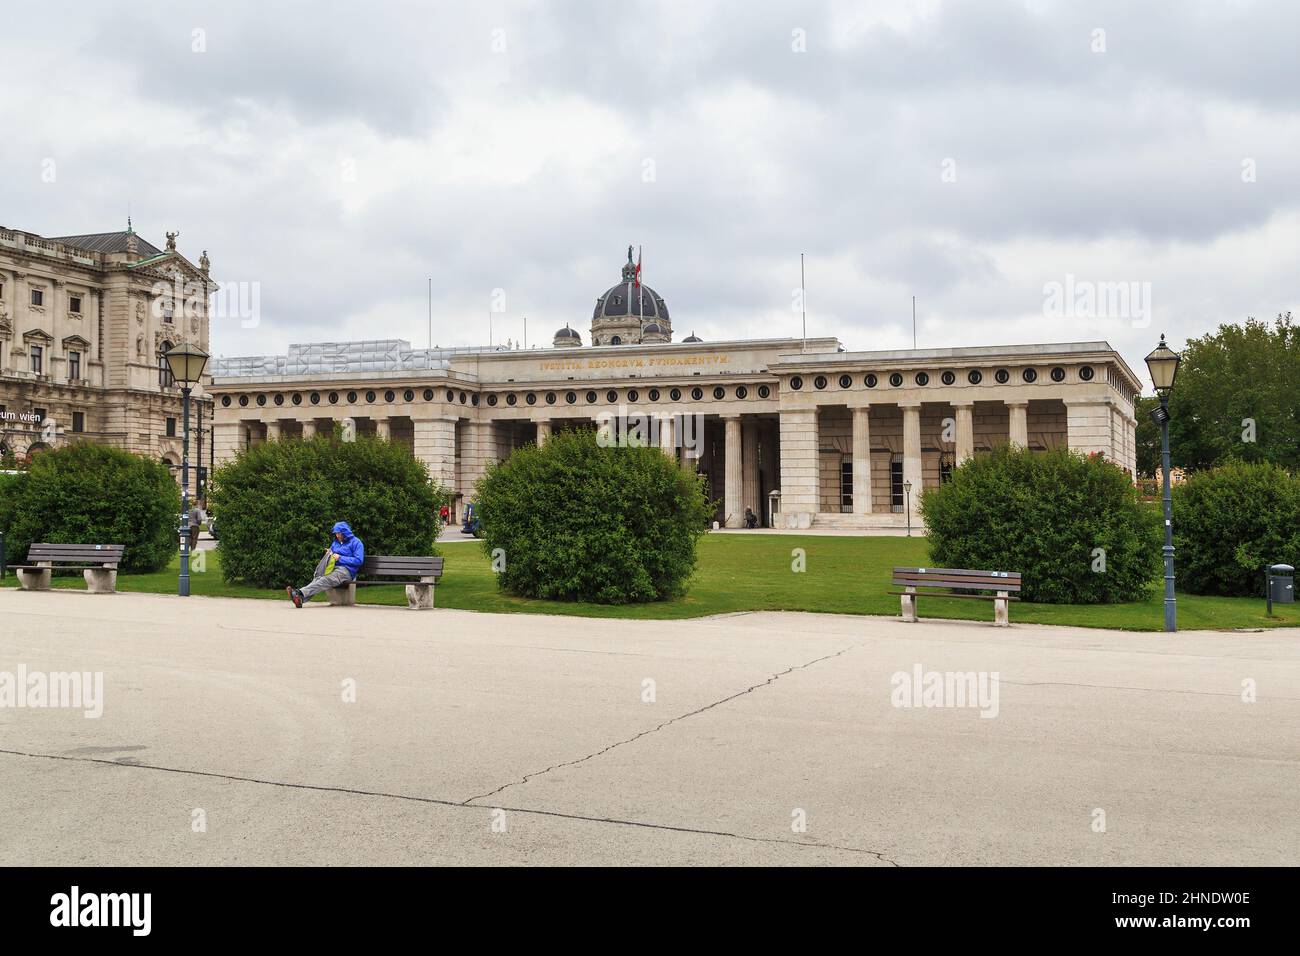 VIENNA, AUSTRIA - 15 MAGGIO 2019: Heroes Portal è una composizione che completa l'insieme architettonico di Piazza Heldenplatz. Foto Stock